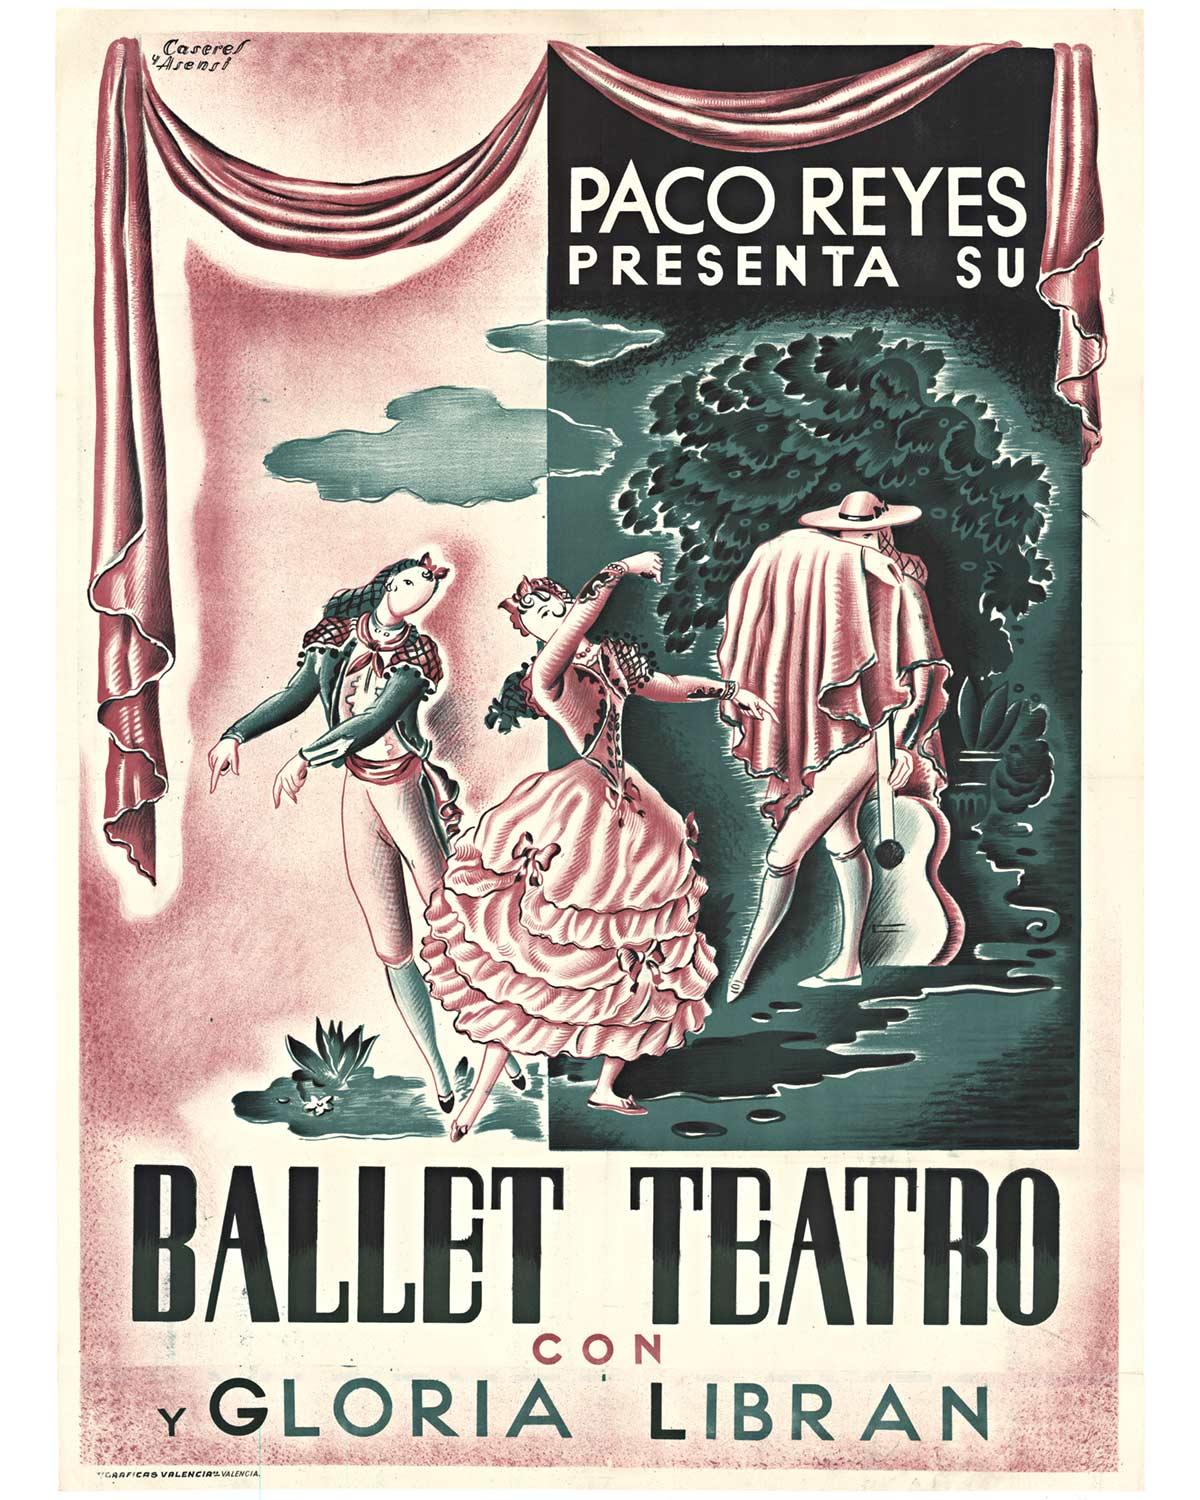 Affiche vintage originale Paco Reyes Presenta Su Ballet Teatro con y Gloria Libran